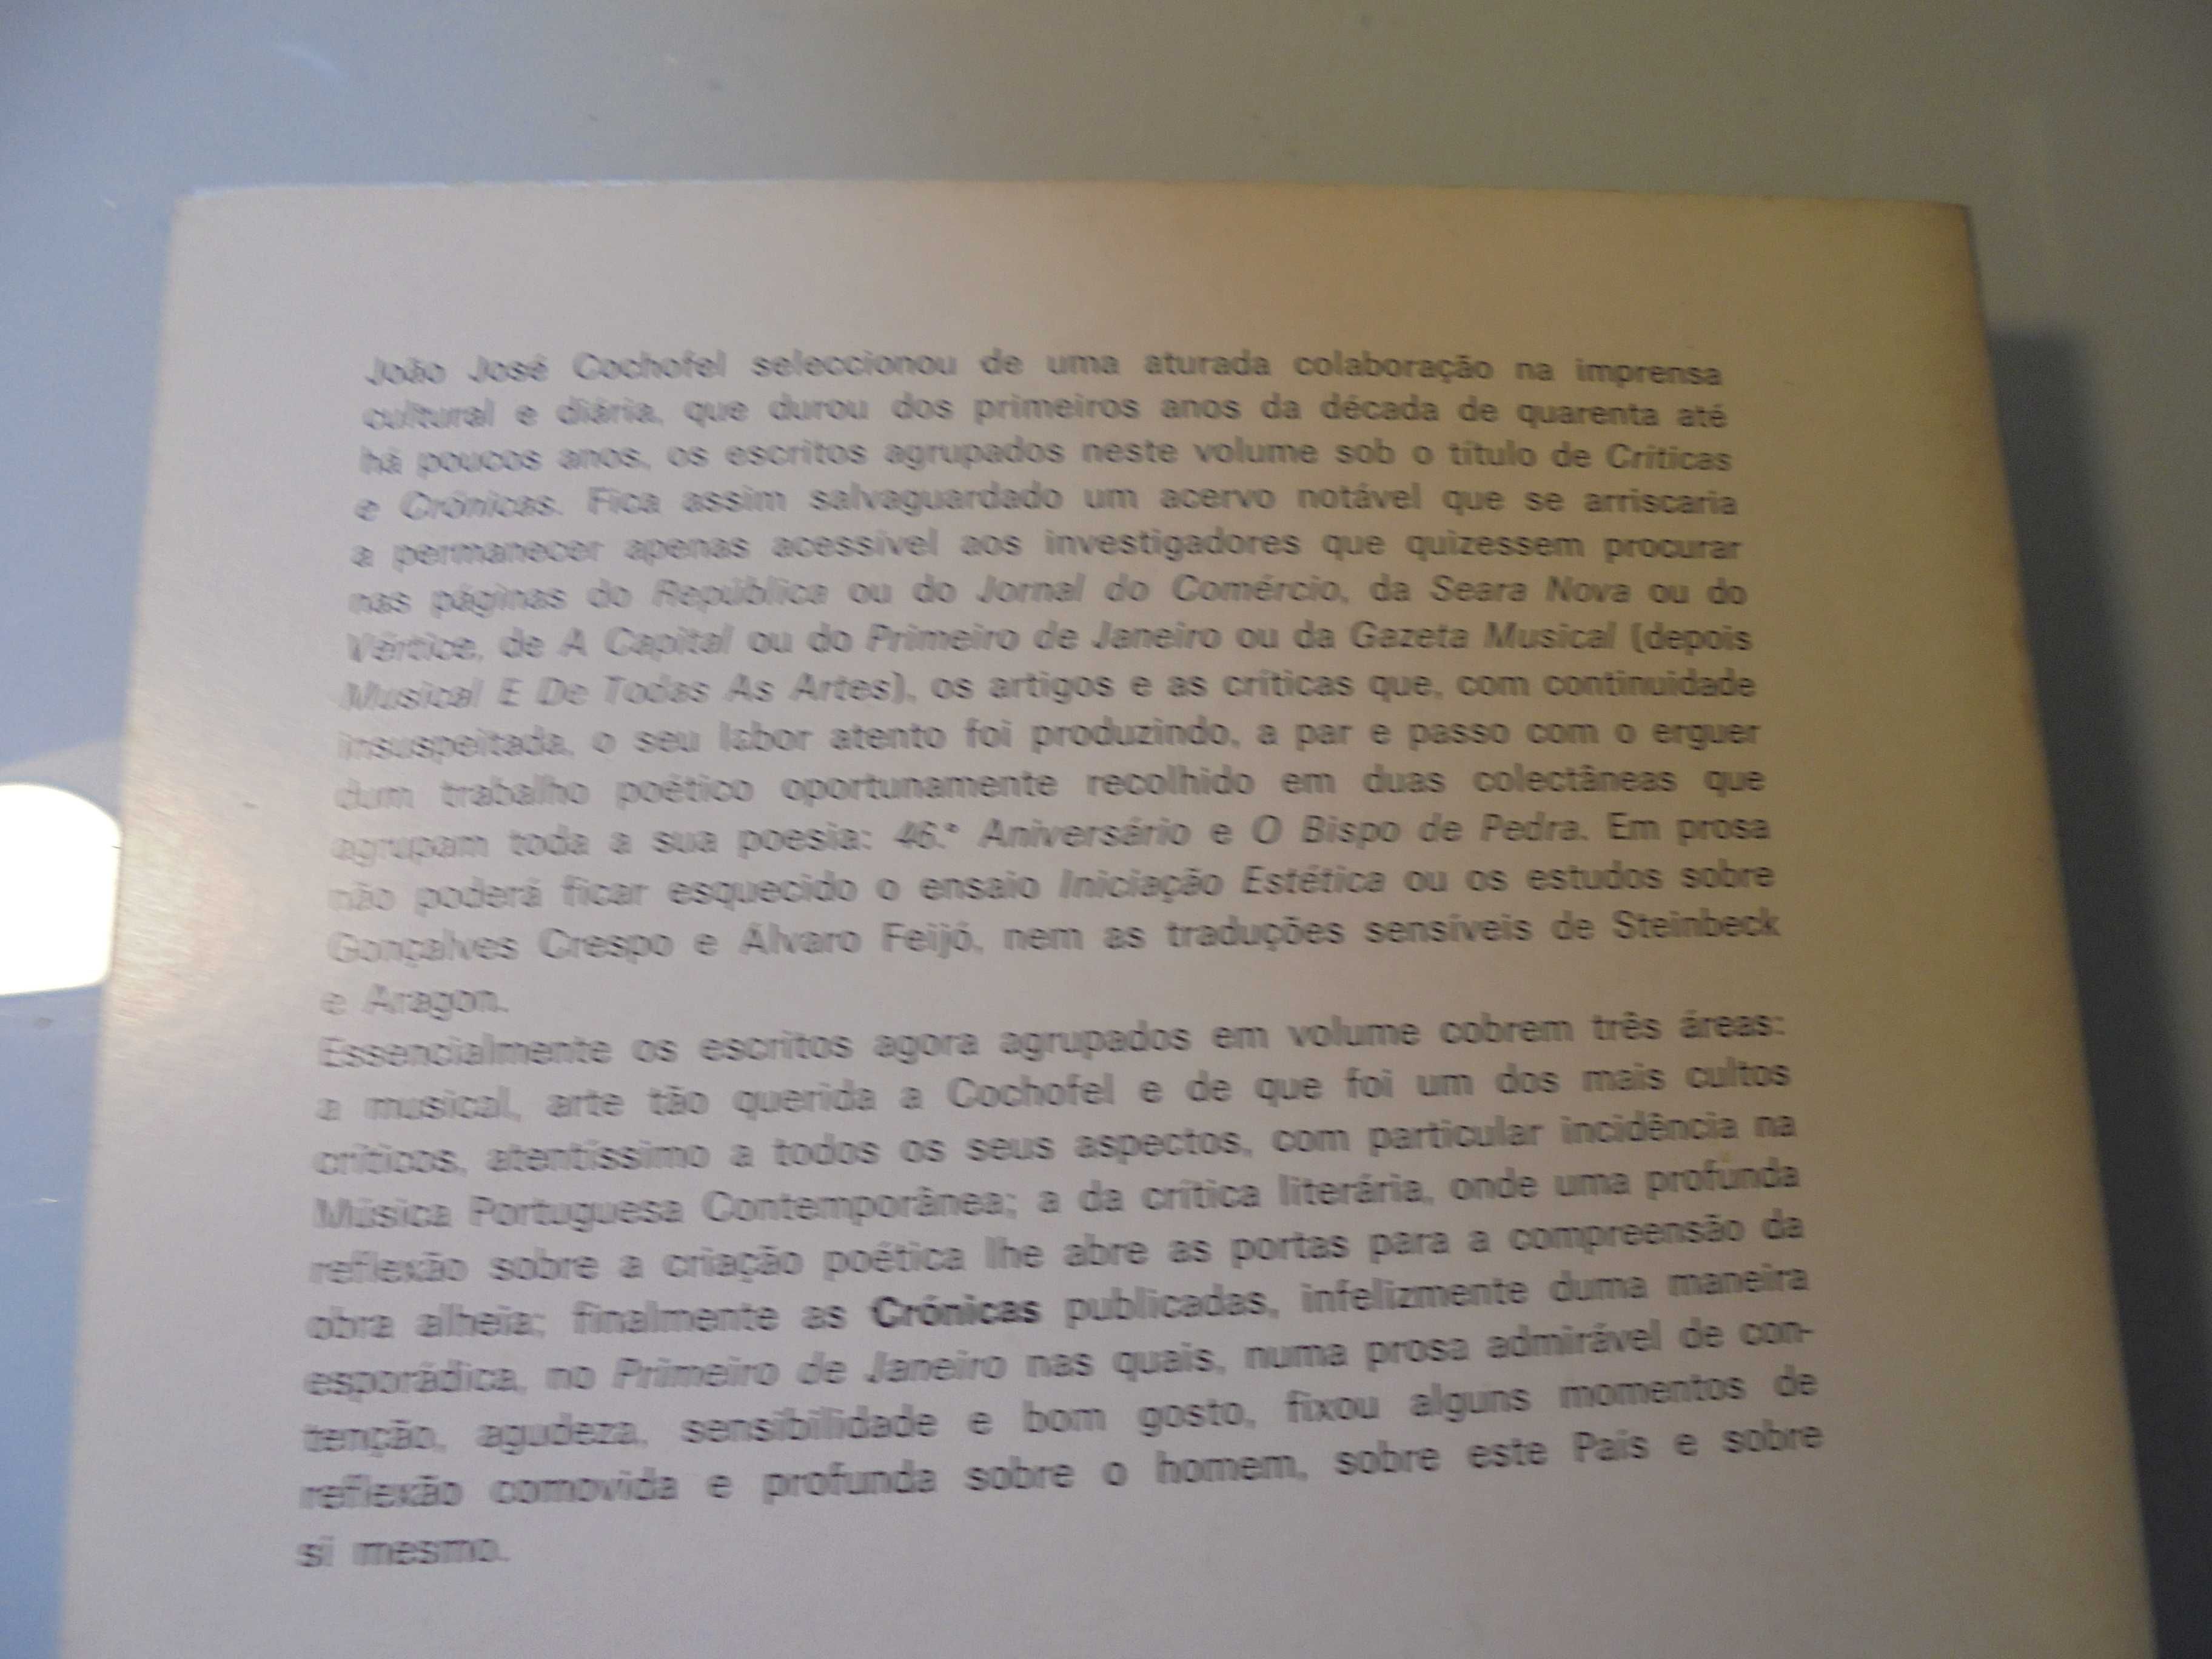 João José Cochofel-Críticas e Notas,Prefácio de Rui Feijó;